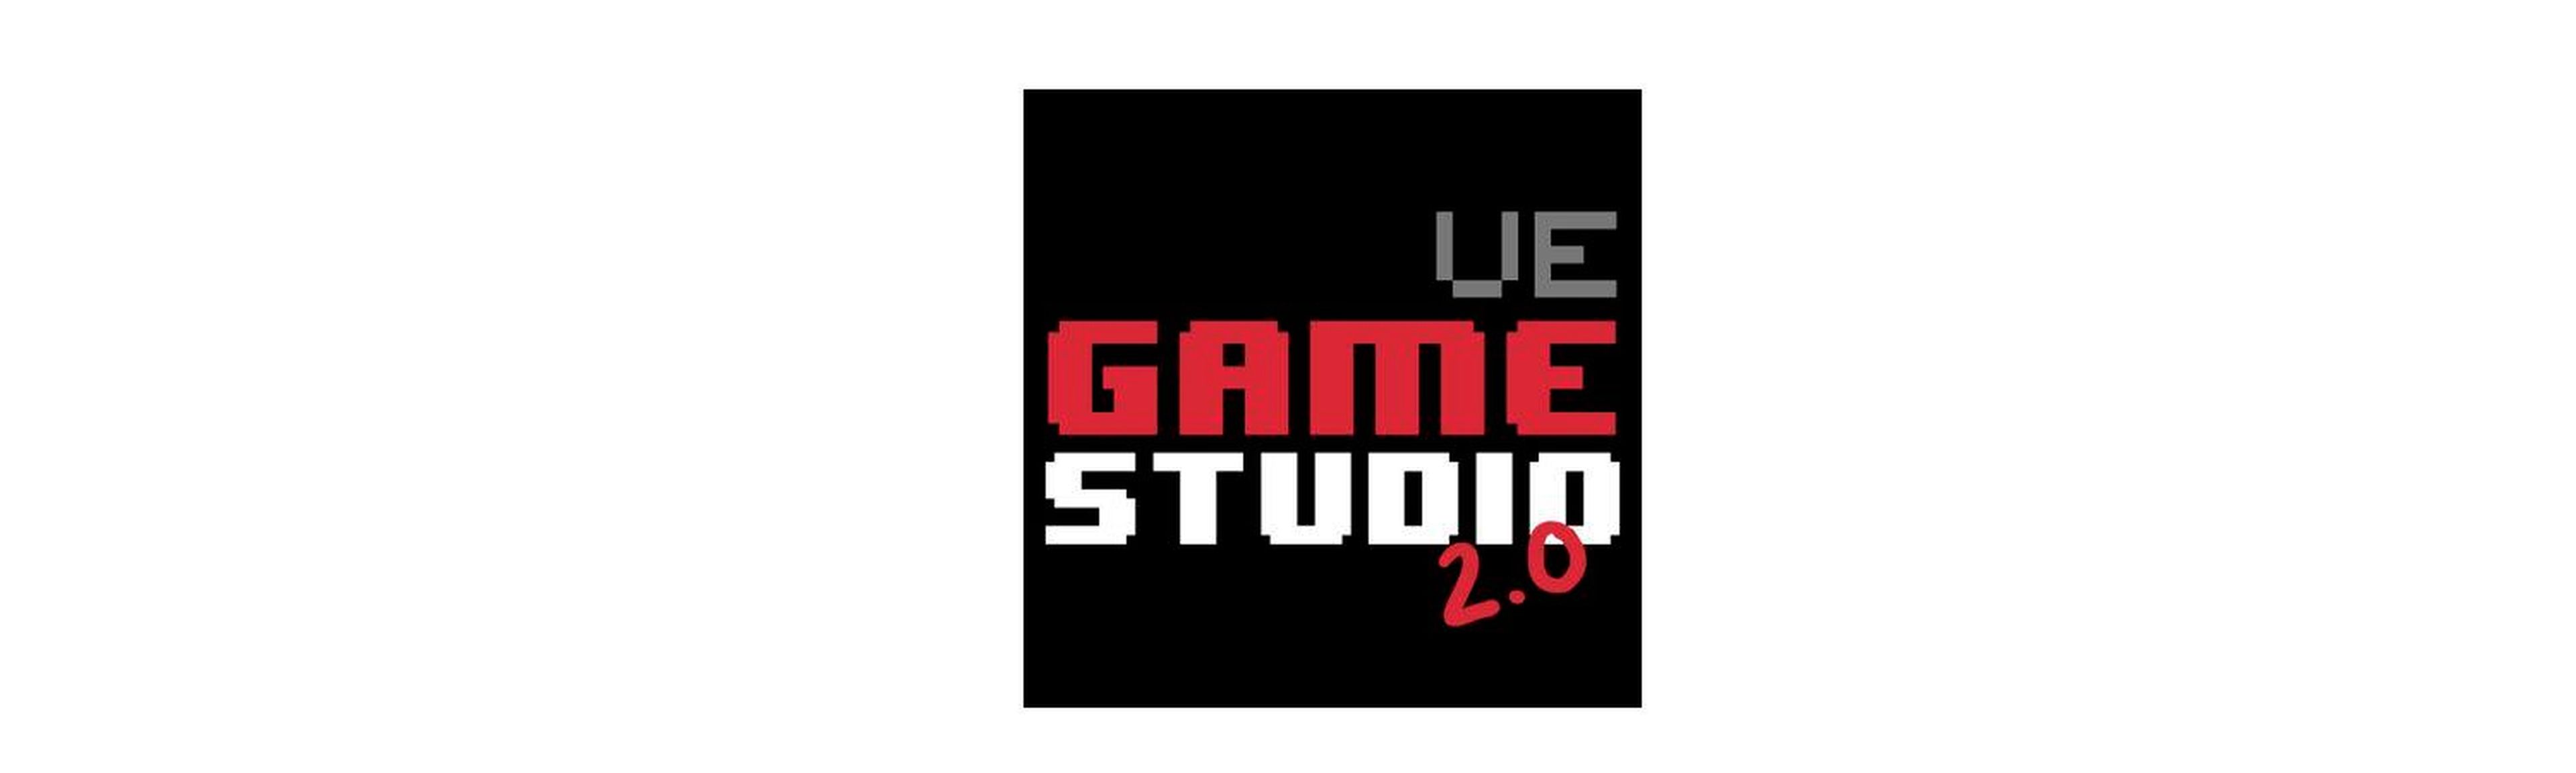 UE Game Studio